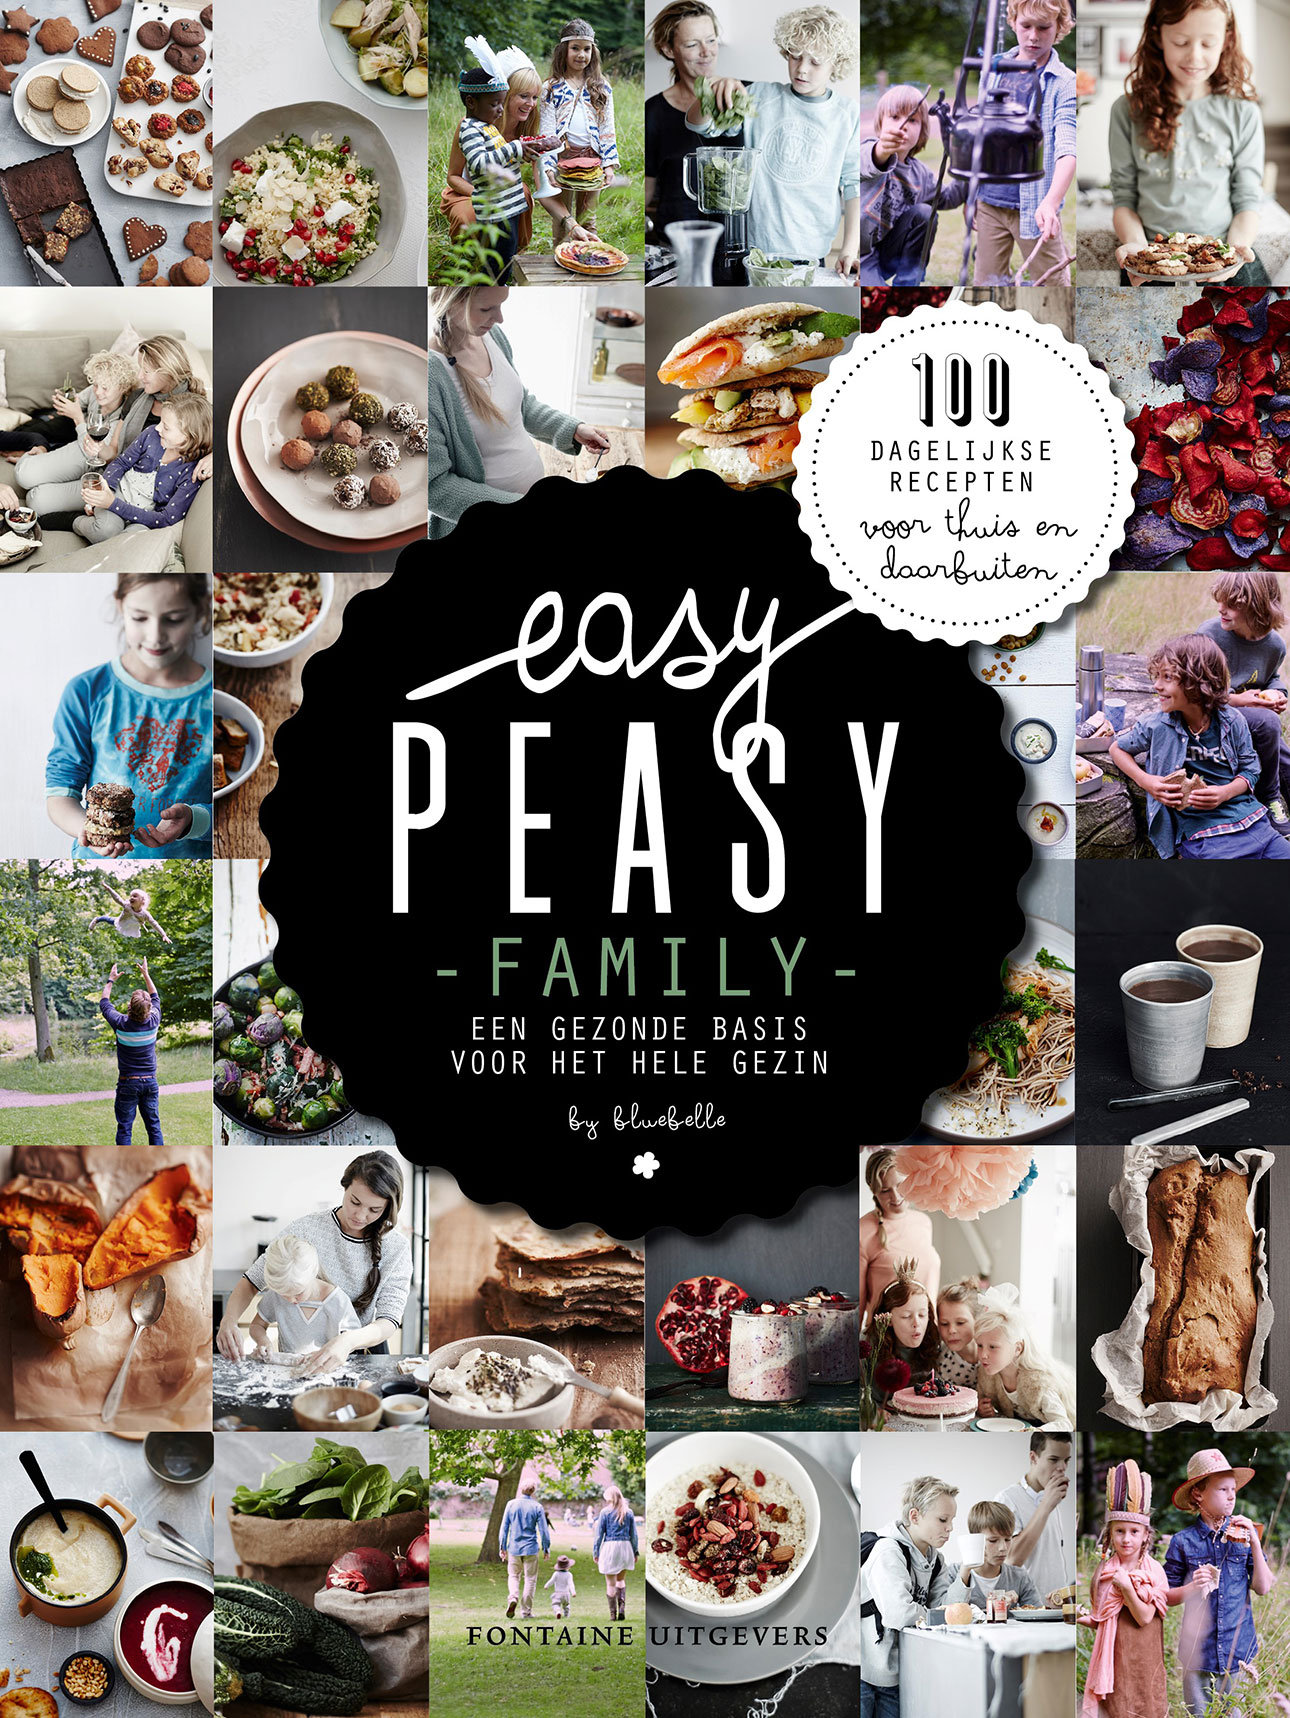 Kookboek gezin easy peasy family